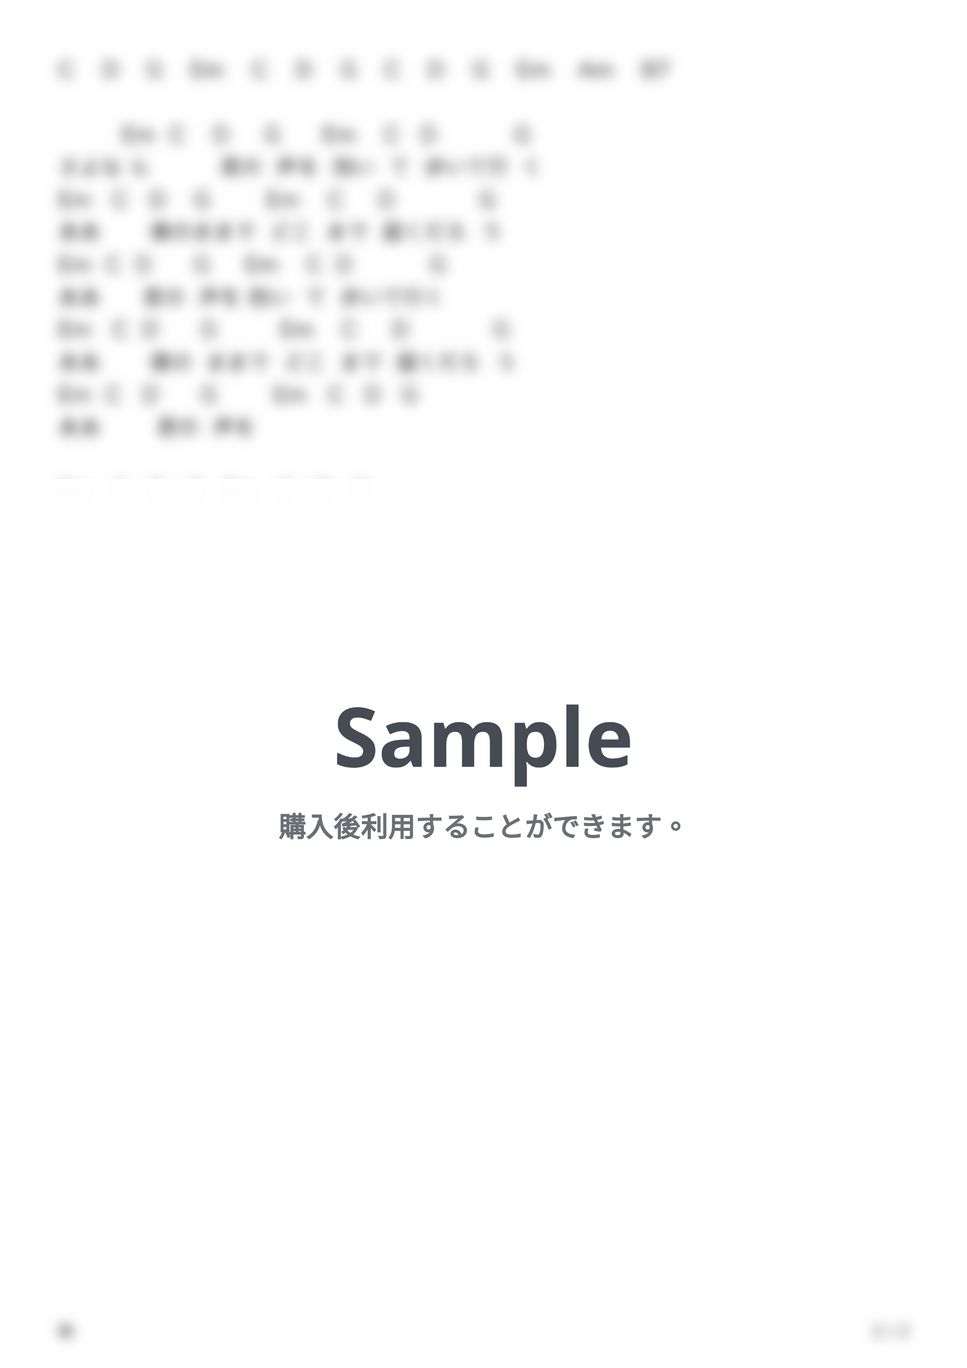 スピッツ - 楓 (ギター弾き語り) by G's score